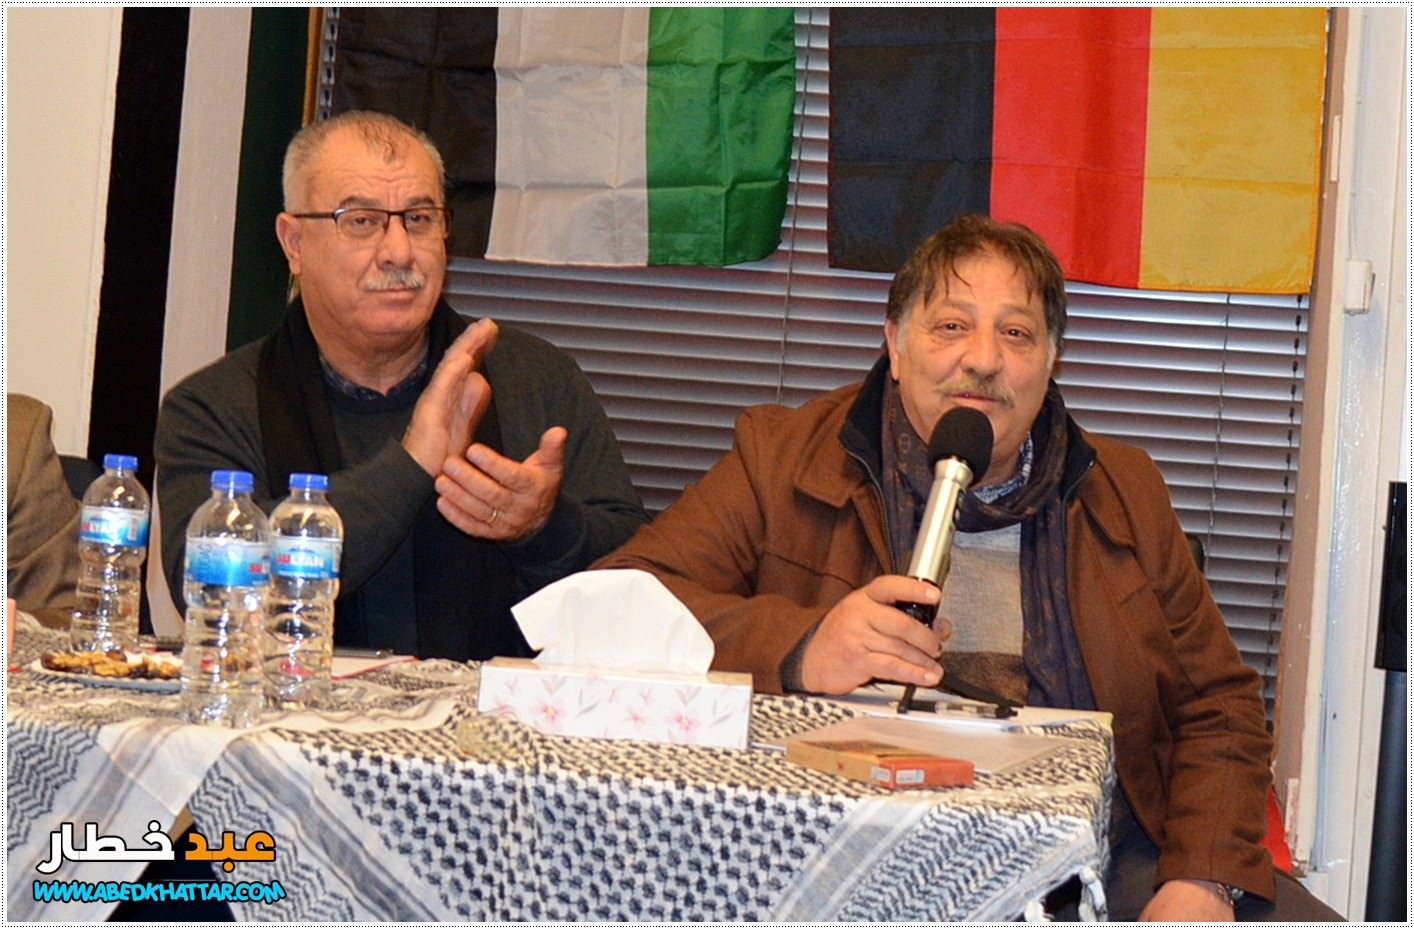 المجلس الفلسطيني المركزي في المانيا دعا الى جلسة حوارية تشاورية حول وحدة العمل الفلسطيني في برلين